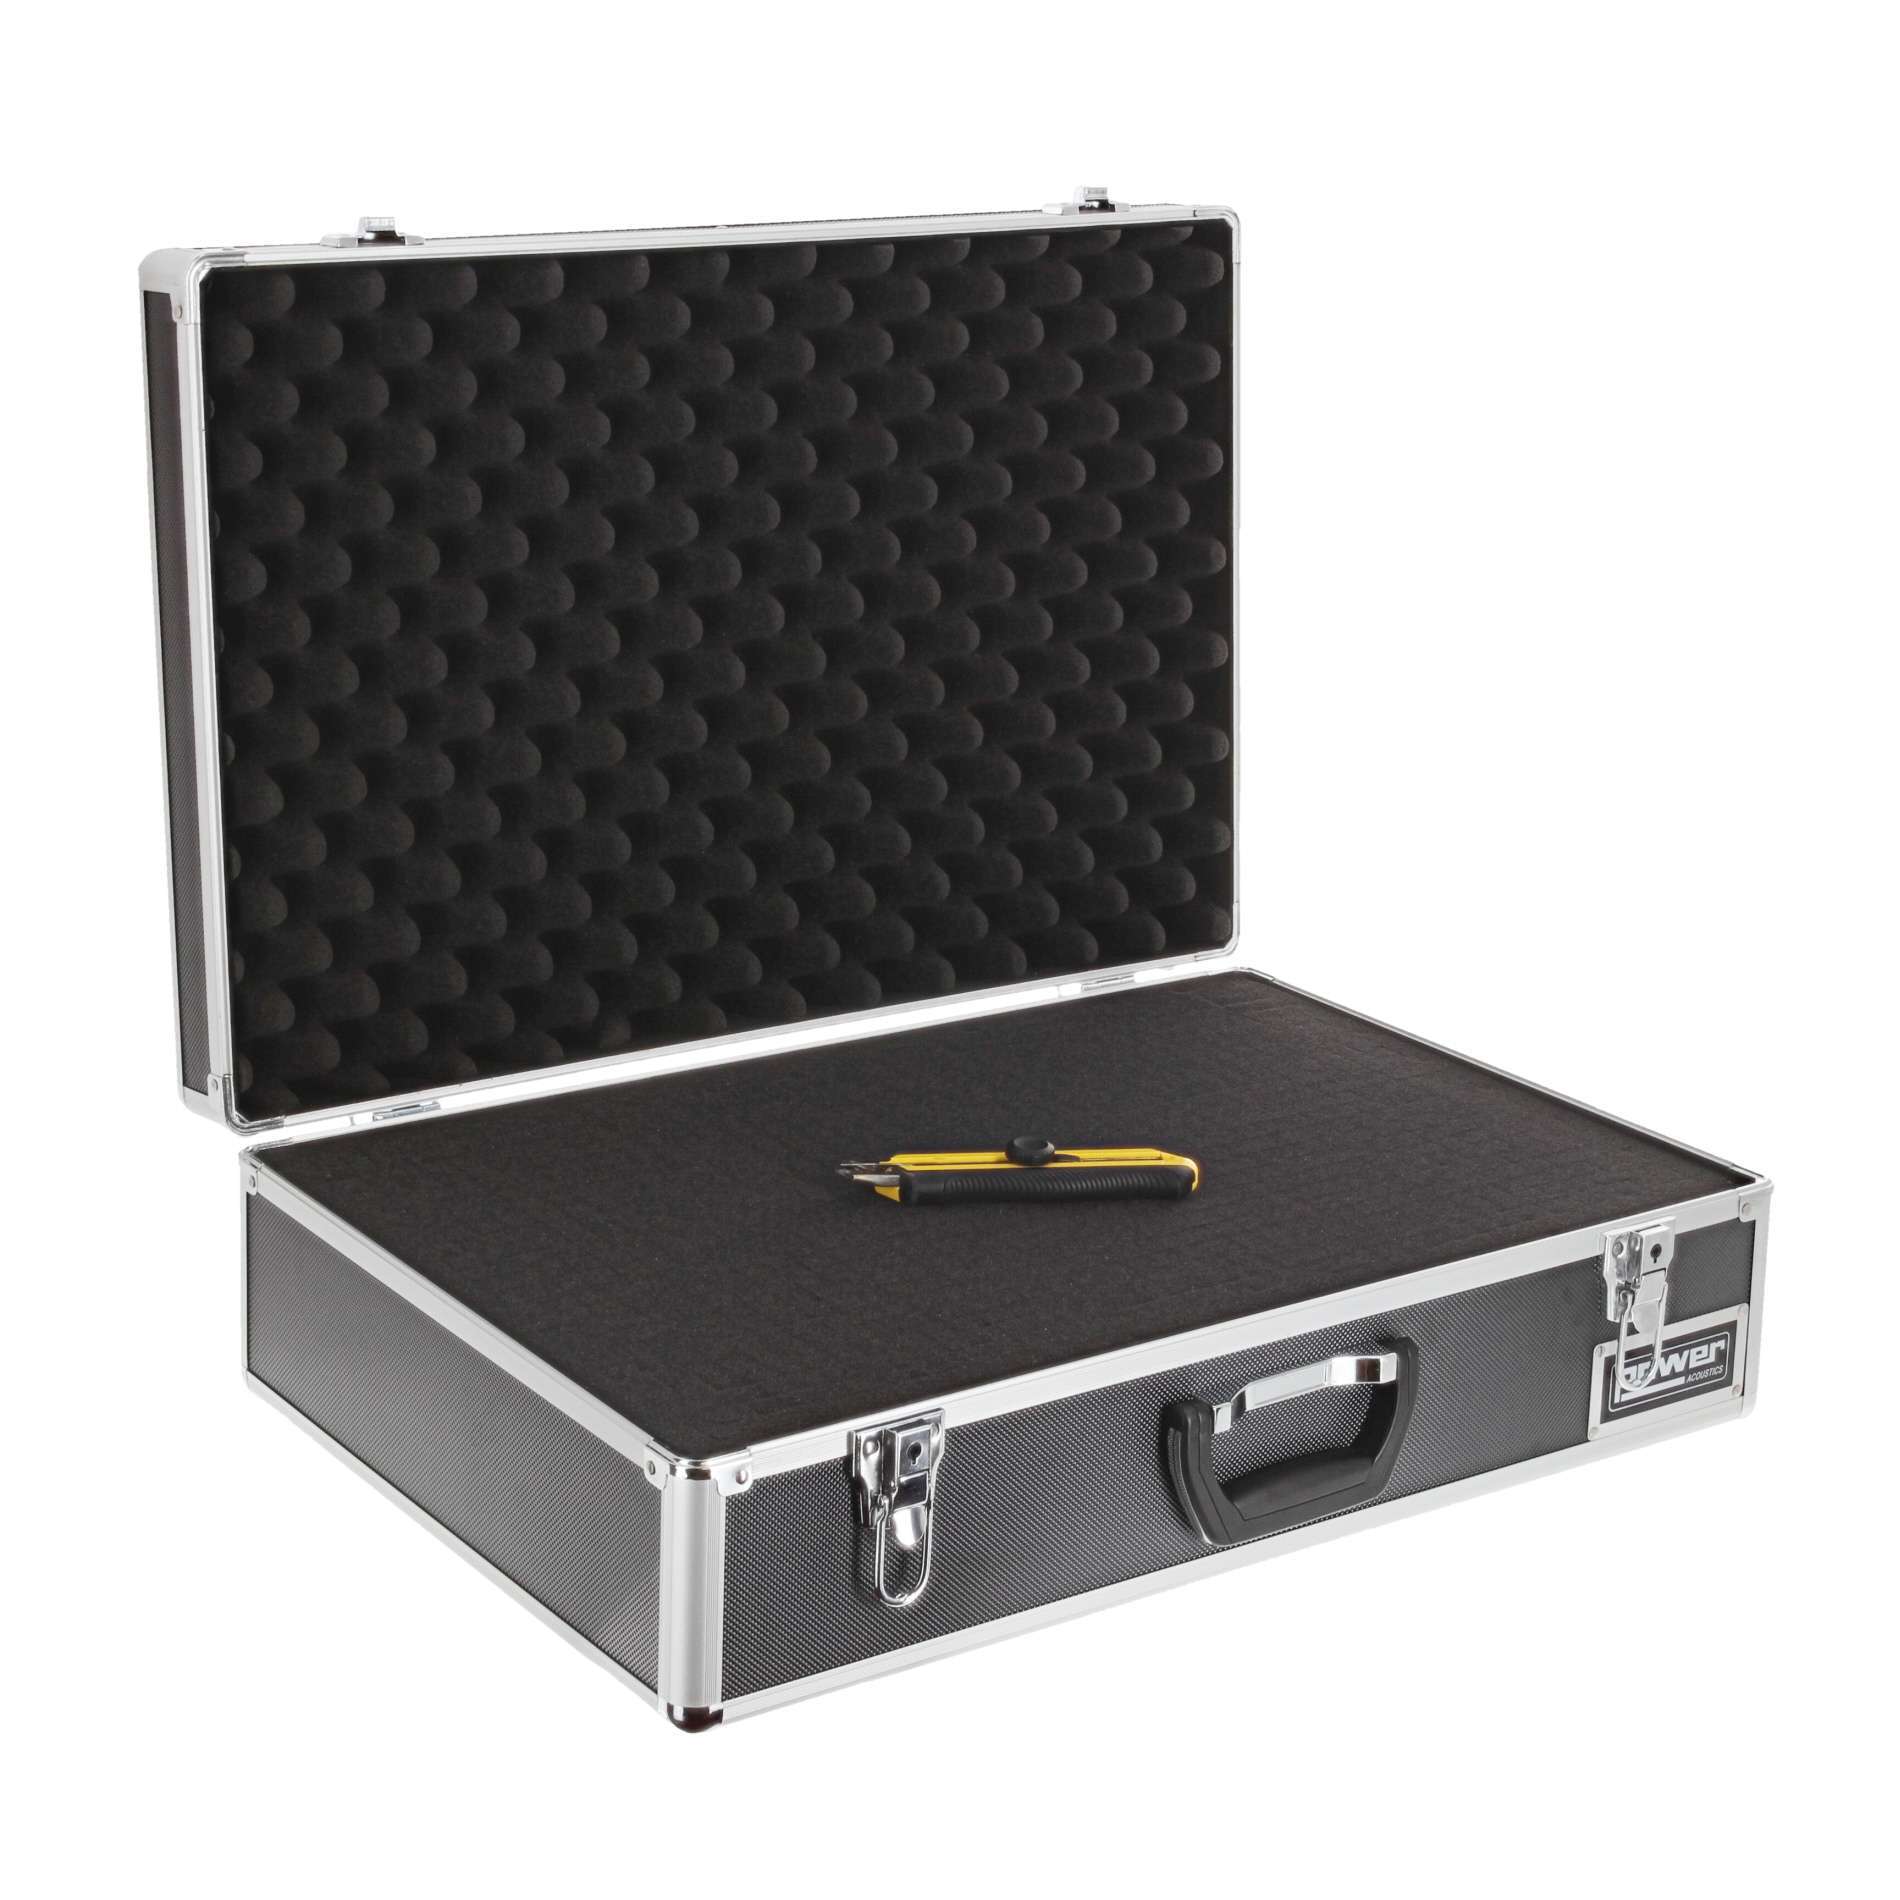 Power Acoustics Fl Mixer 4 Valise De Transport Pour Mixeur - Mixer case - Variation 1